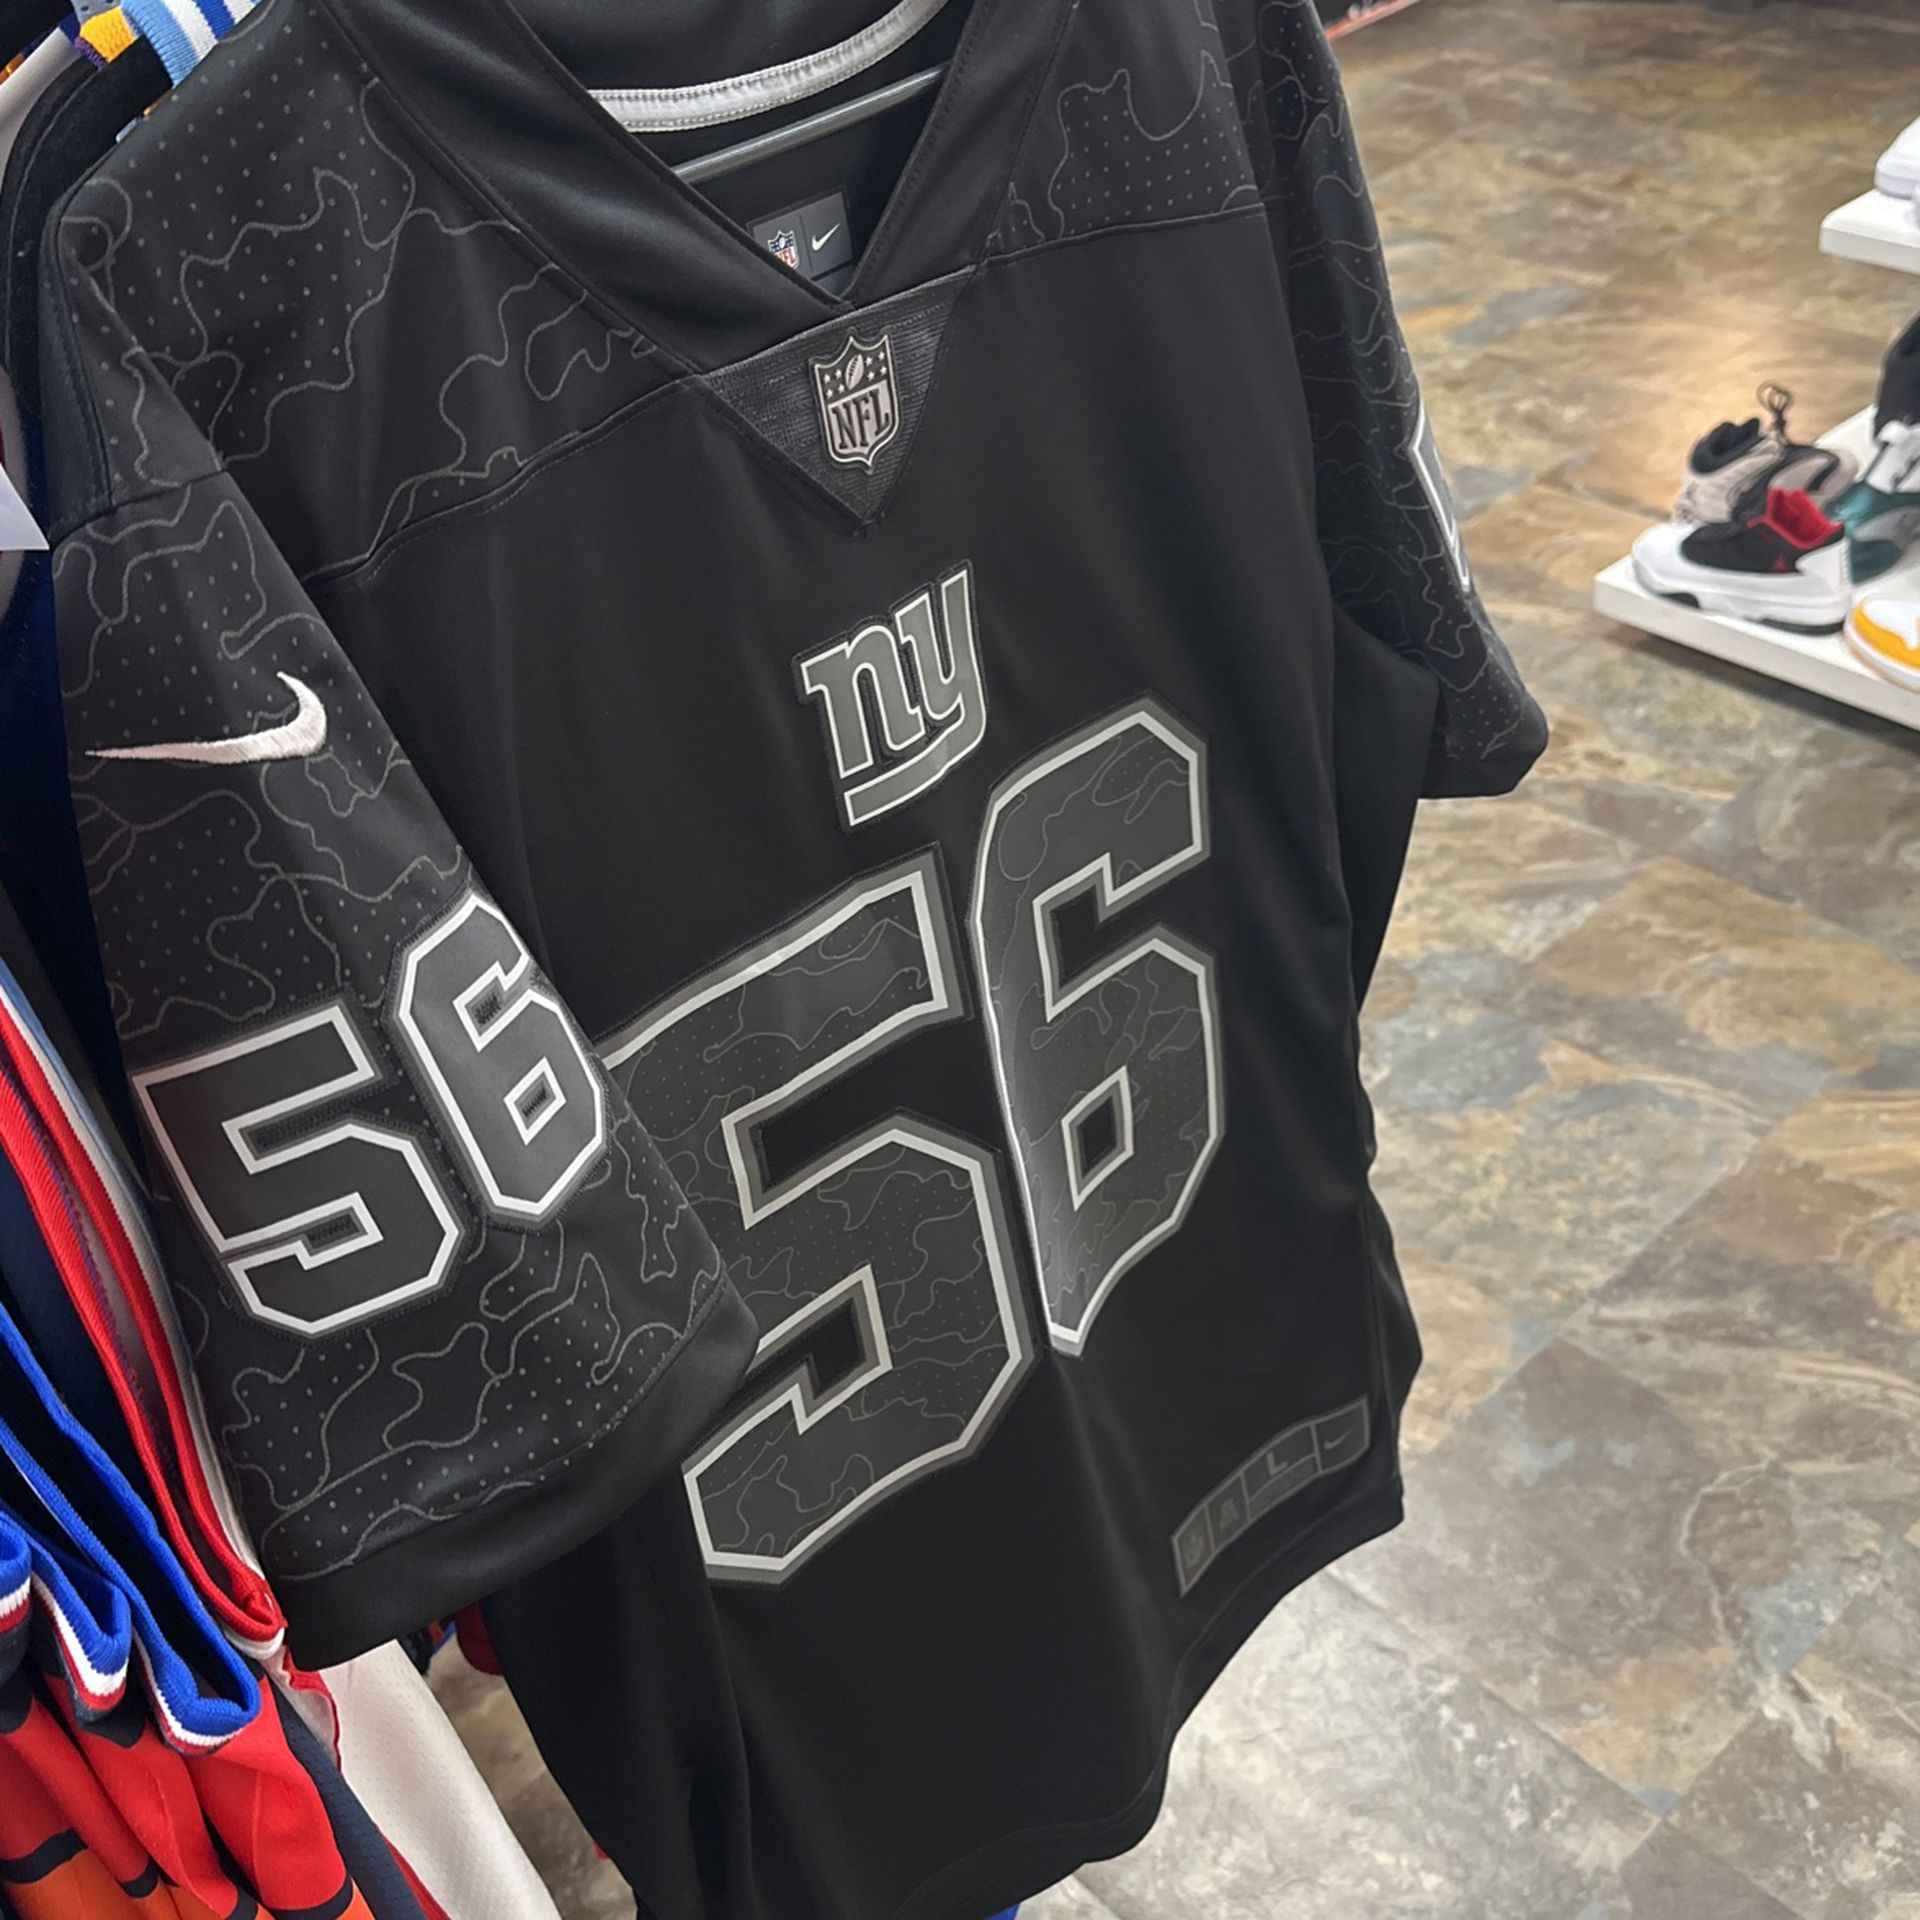 New York Giants football jersey men size L #56 Lawrence Taylor Nike jersey  RFLCTV Limited jersey. Pick up 1549 Cesery Blvd Jacksonville, Florida 32211